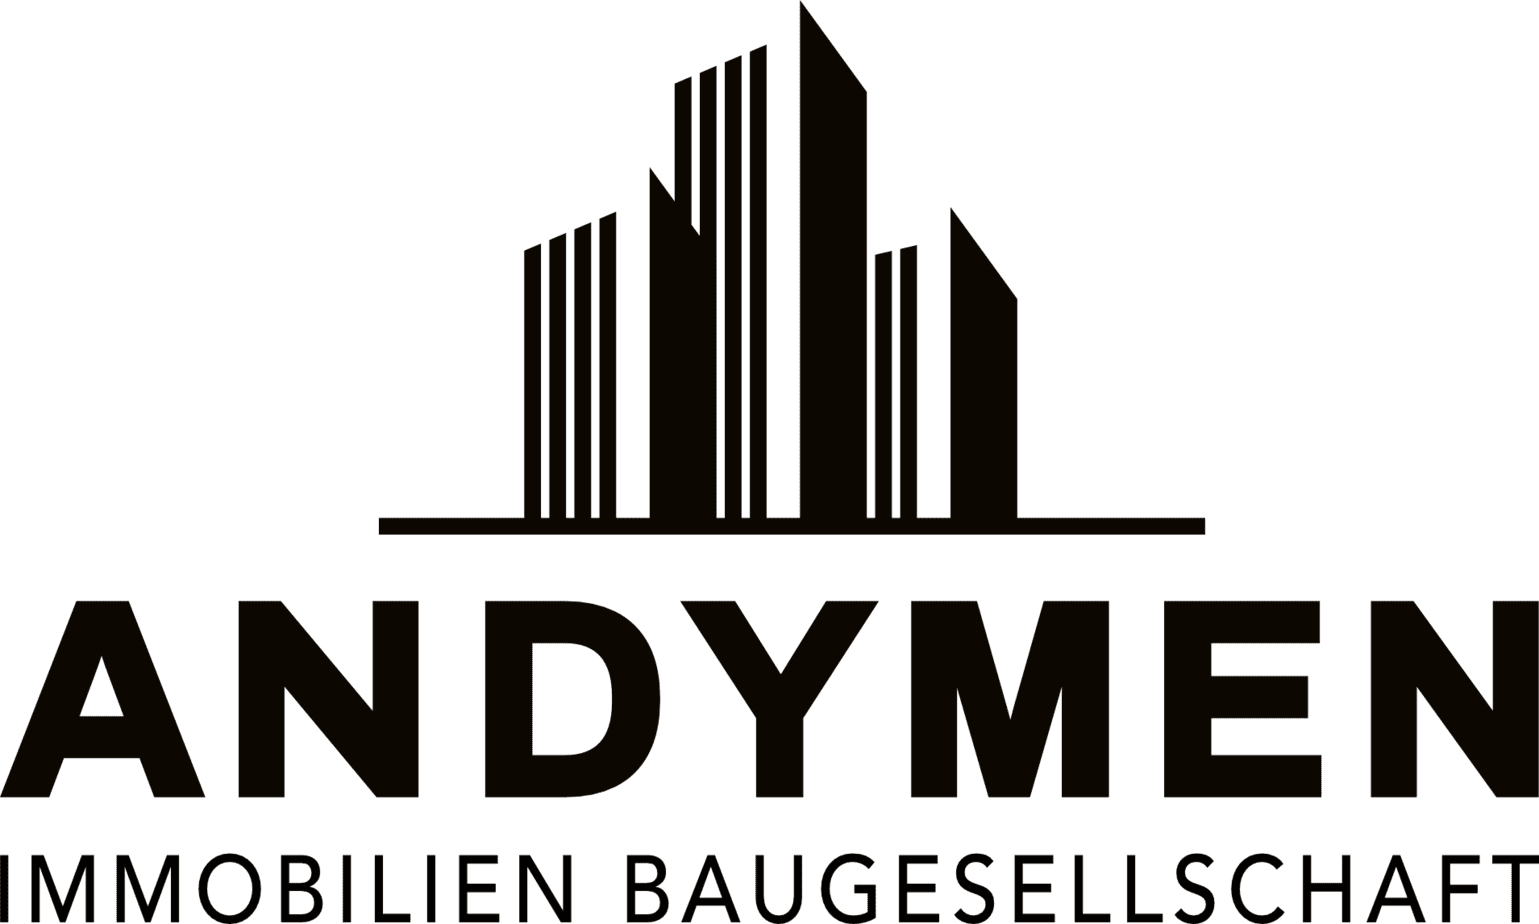 Andymen Baugesellschaft Logo square